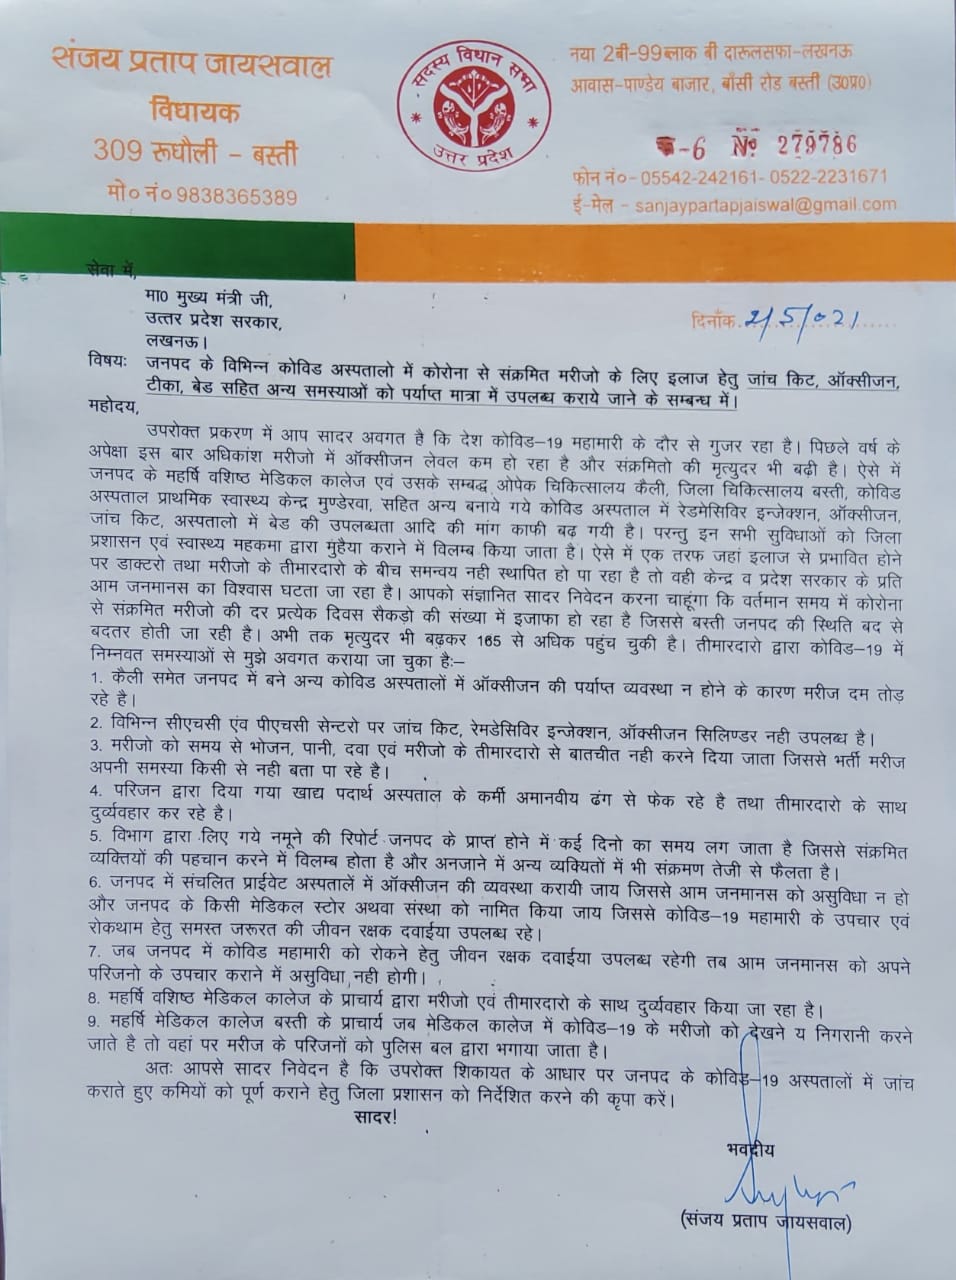 संजय प्रताप जायसवाल द्वारा मुख्यमंत्री को लिखा गया पत्र.